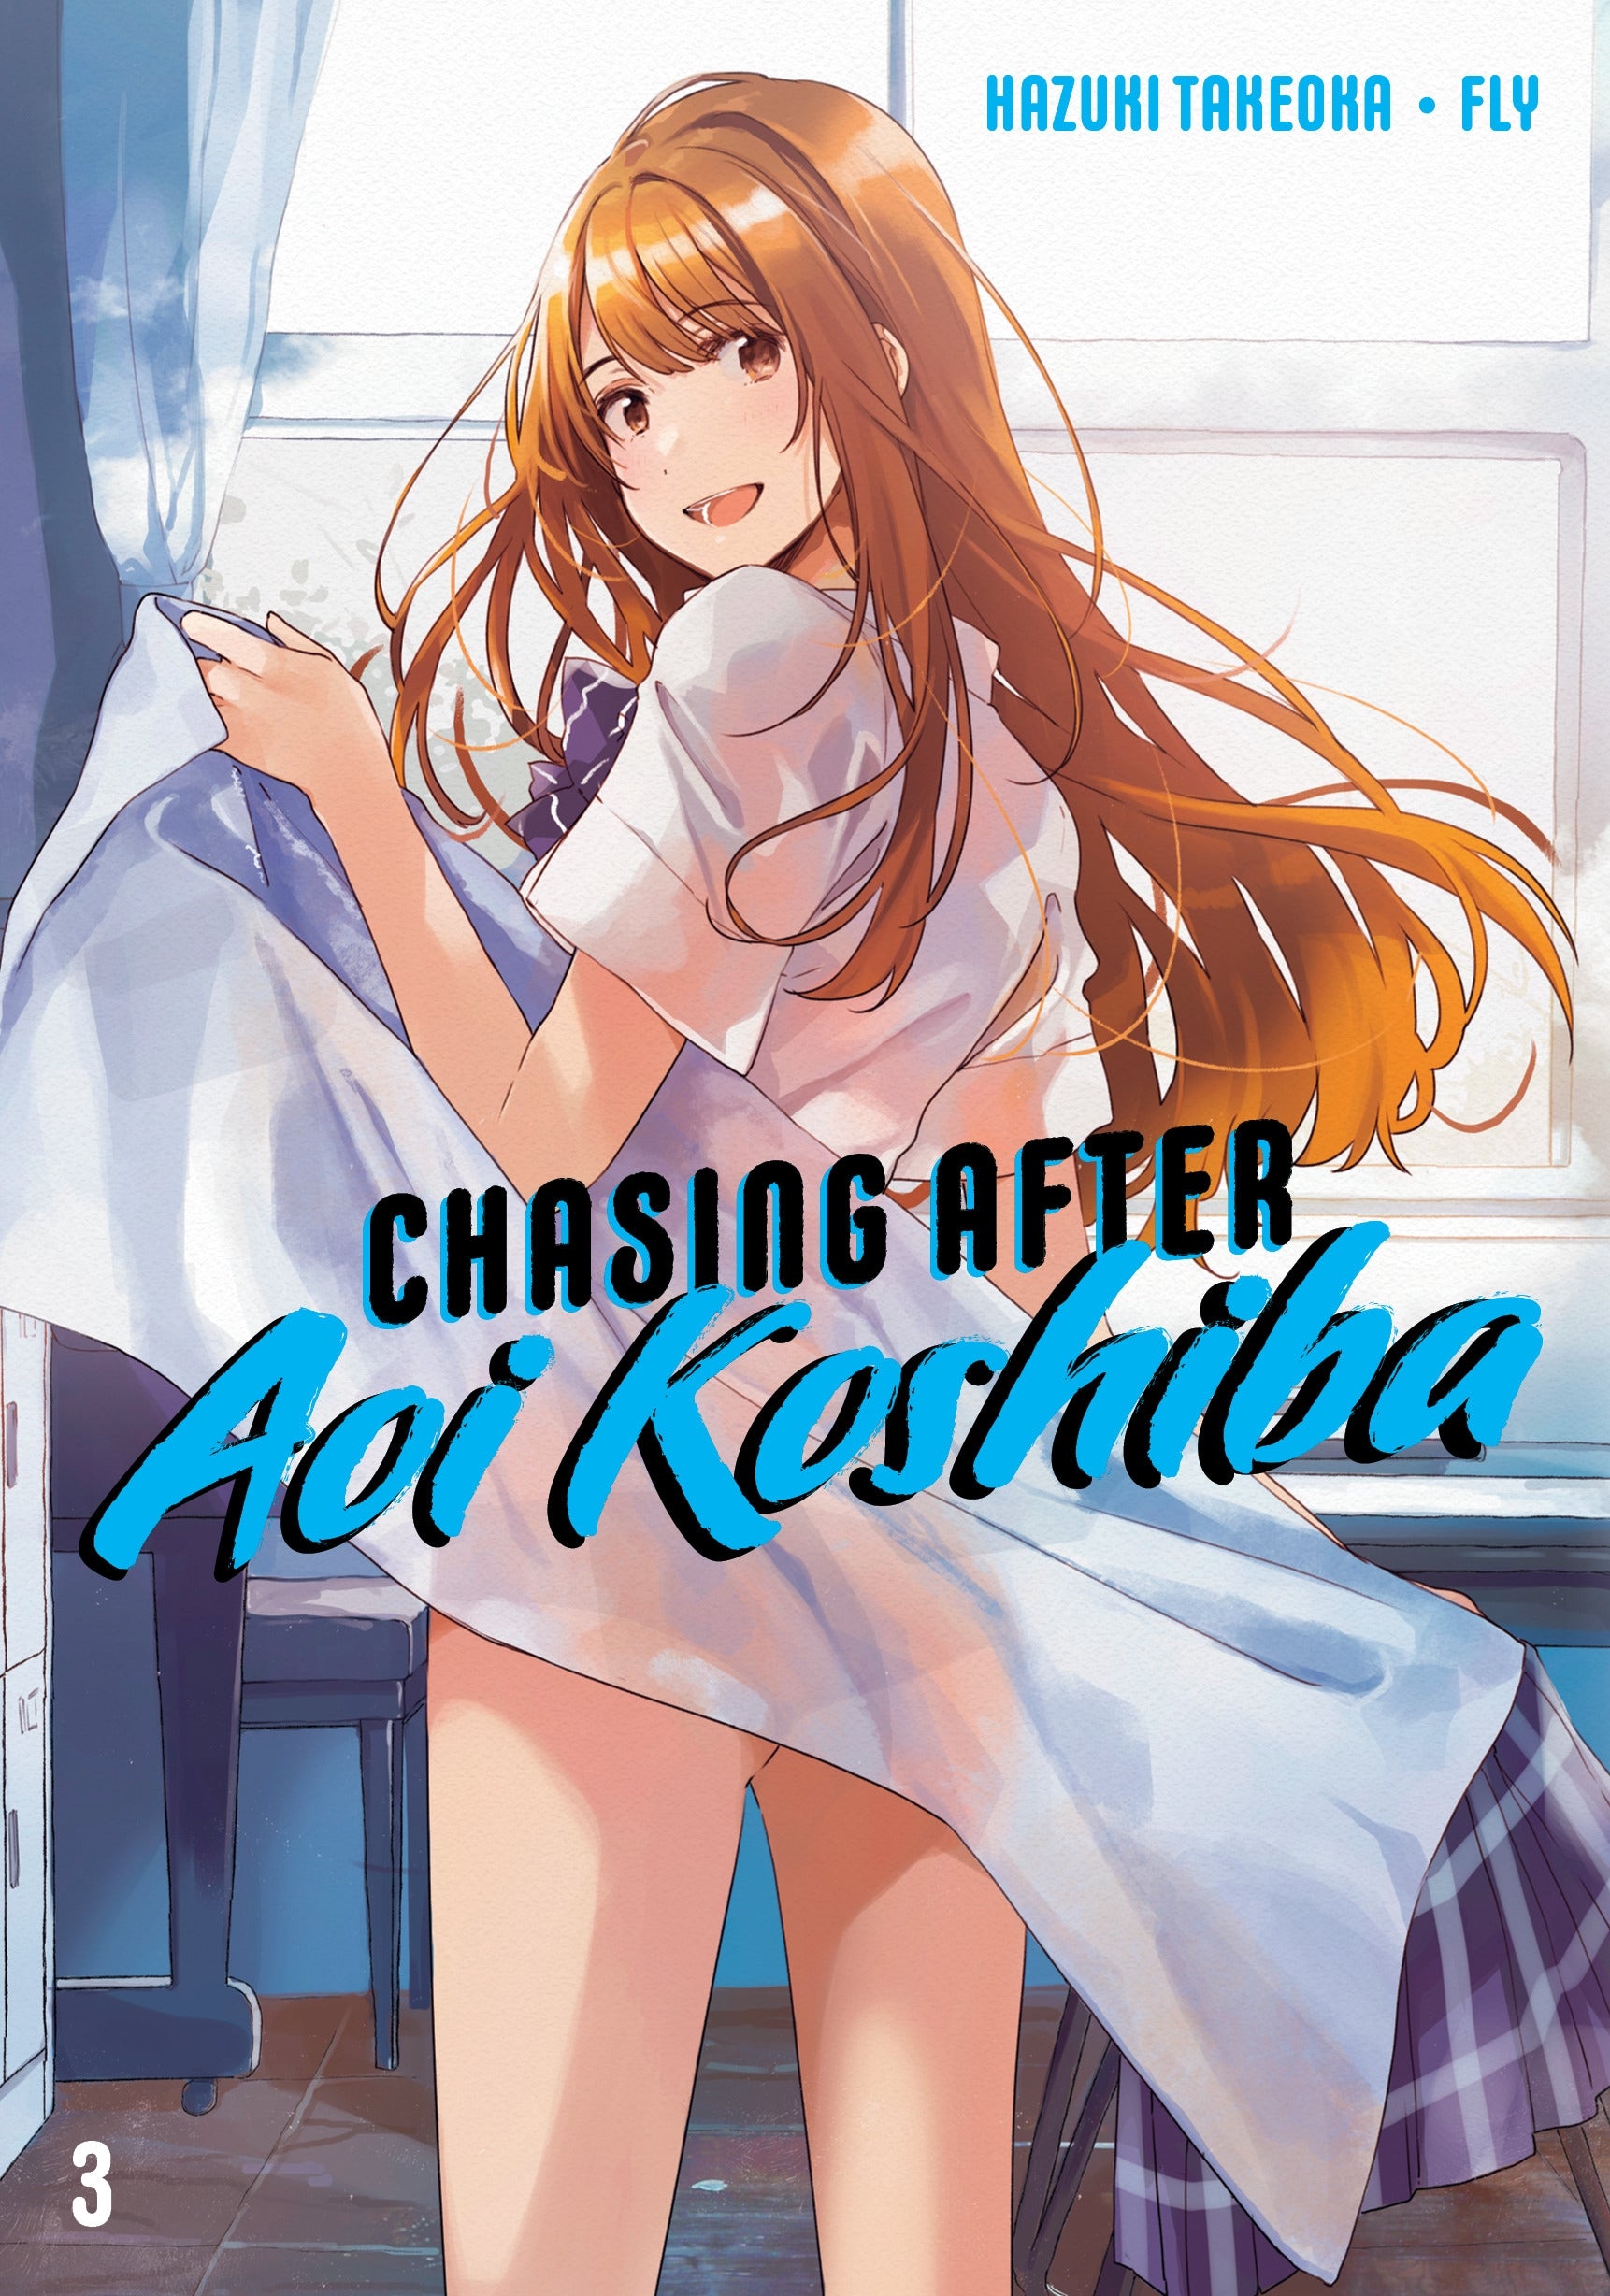 Chasing After Aoi Koshiba 3 - Manga Warehouse